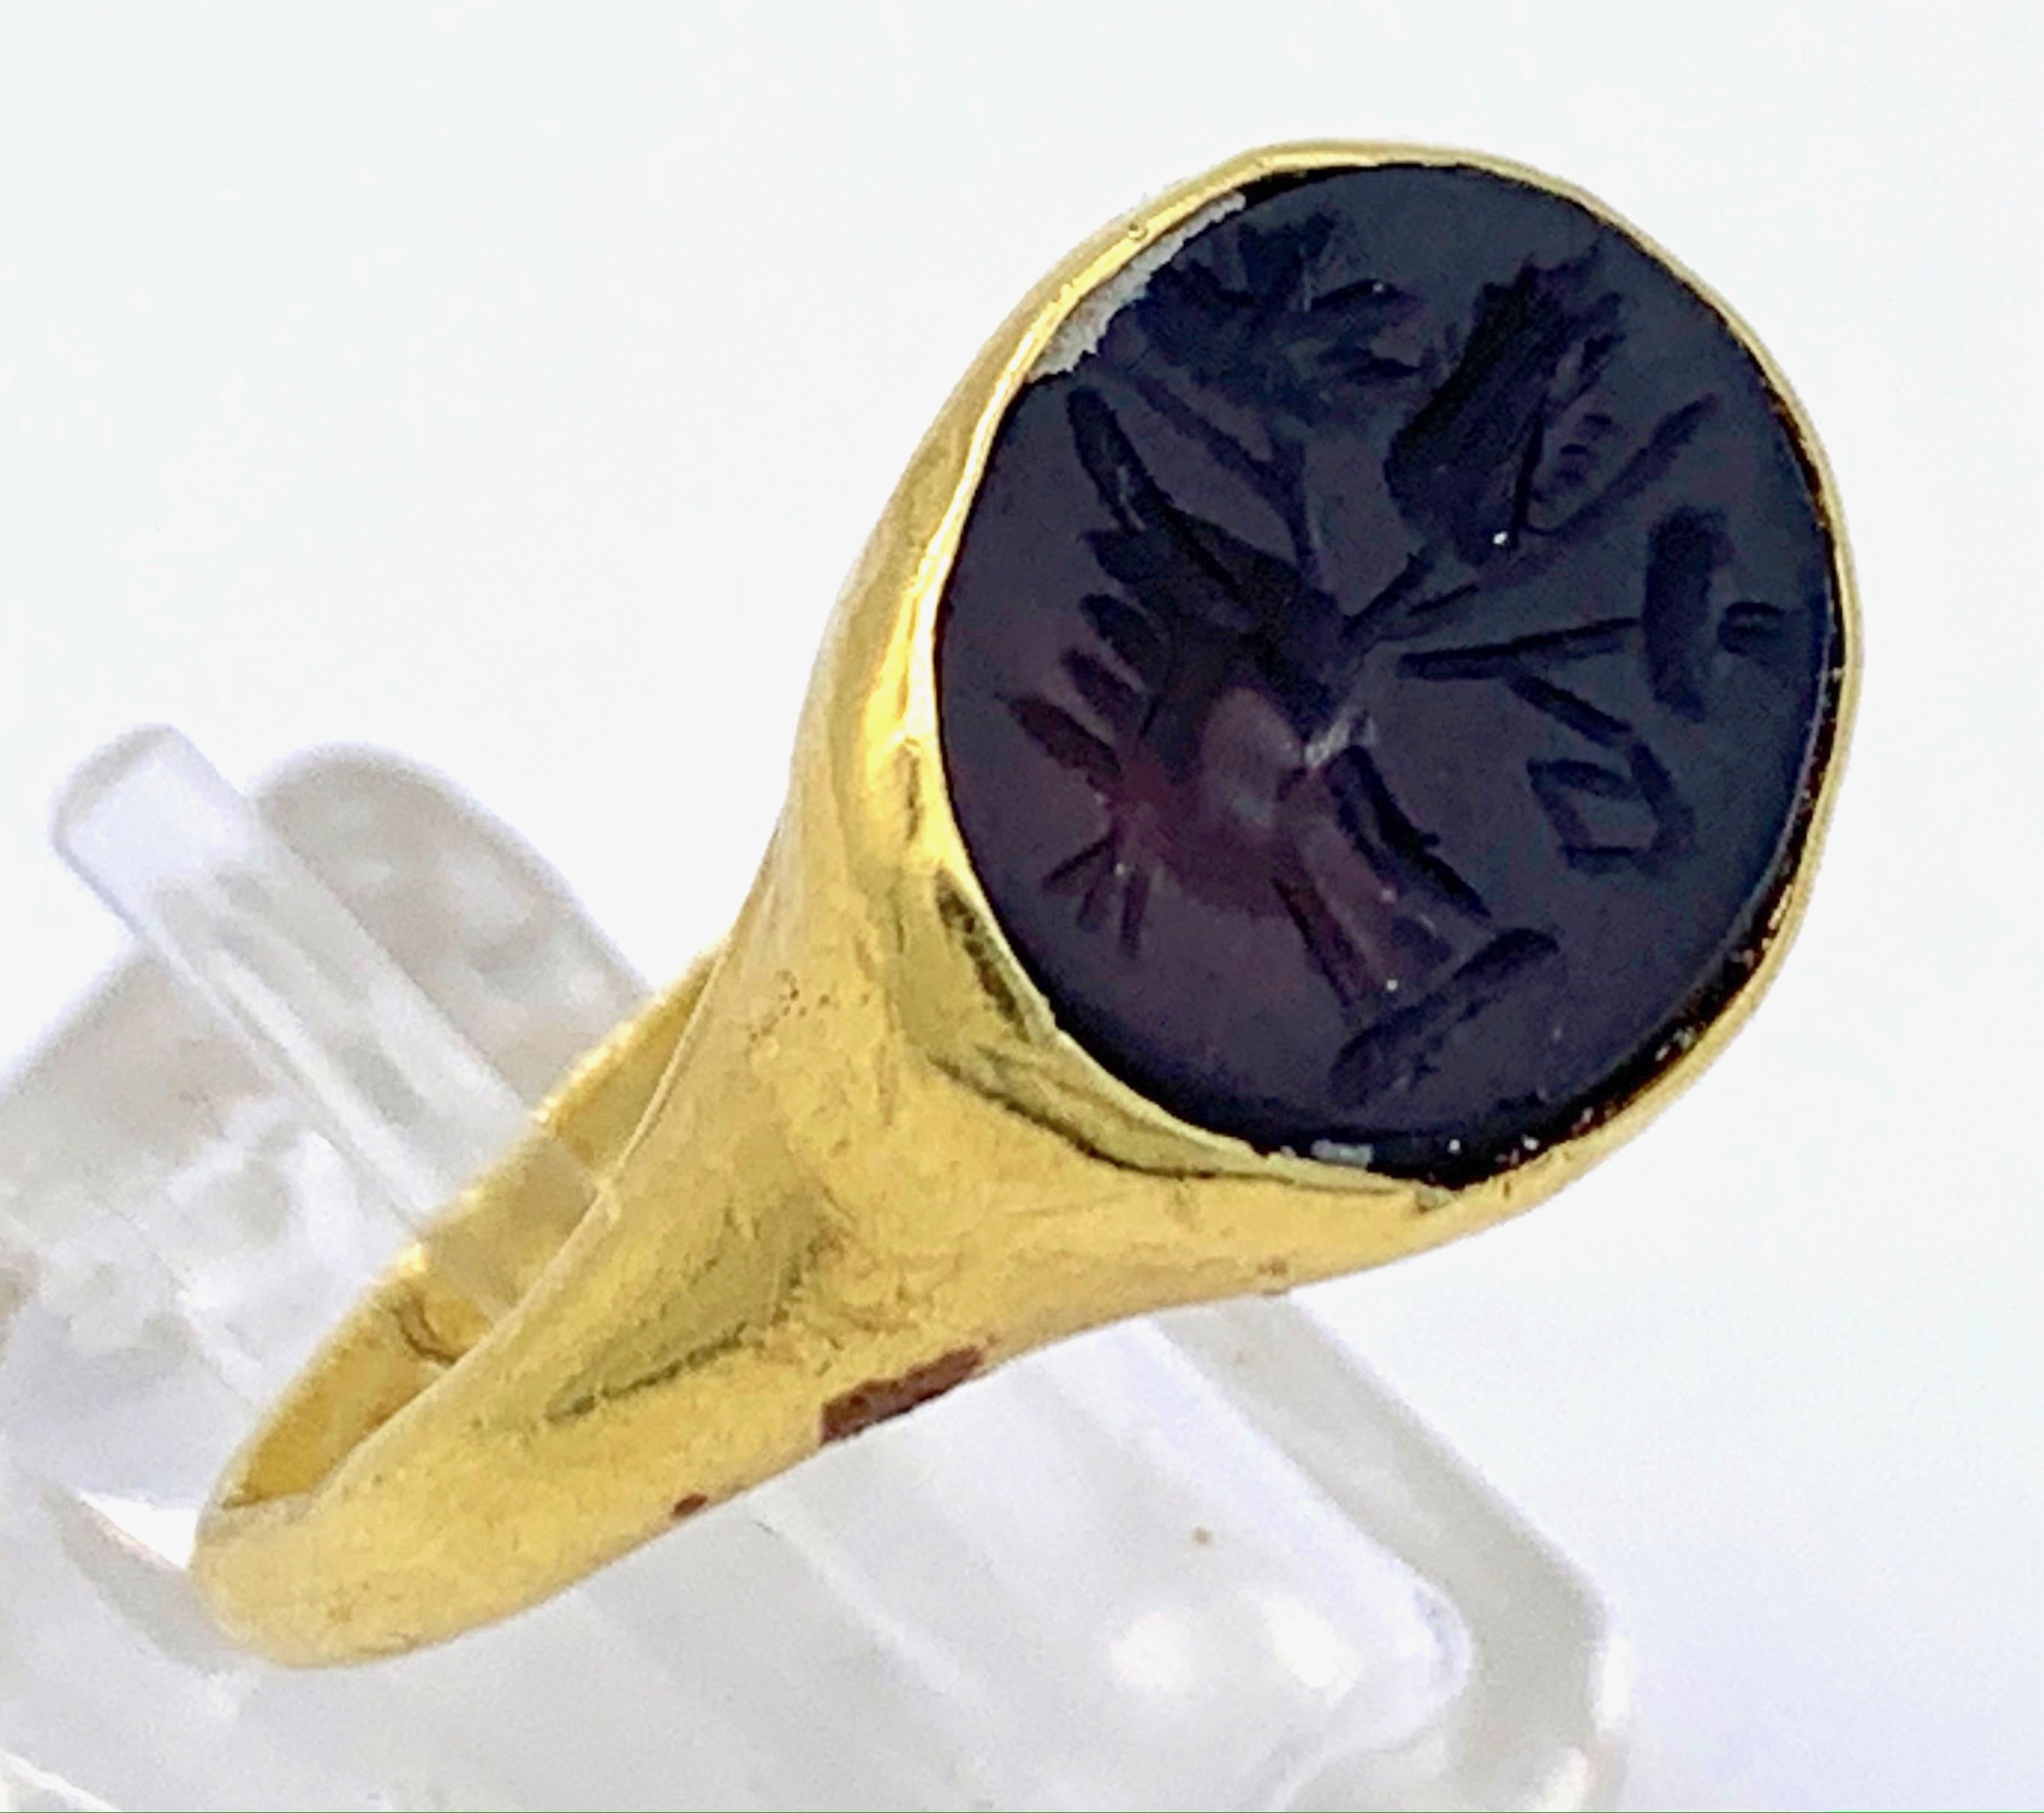 Dieser Ring aus 18 Karat Gold ist mit einem tiefbraunen Achat-Intaglio besetzt. Das römische Intaglio stammt aus dem zweiten/dritten Jahrhundert n. Chr. und zeigt eine Hand, die ein Ruder hält, eine Mohnblume und eine weitere Blume. Das Intaglio